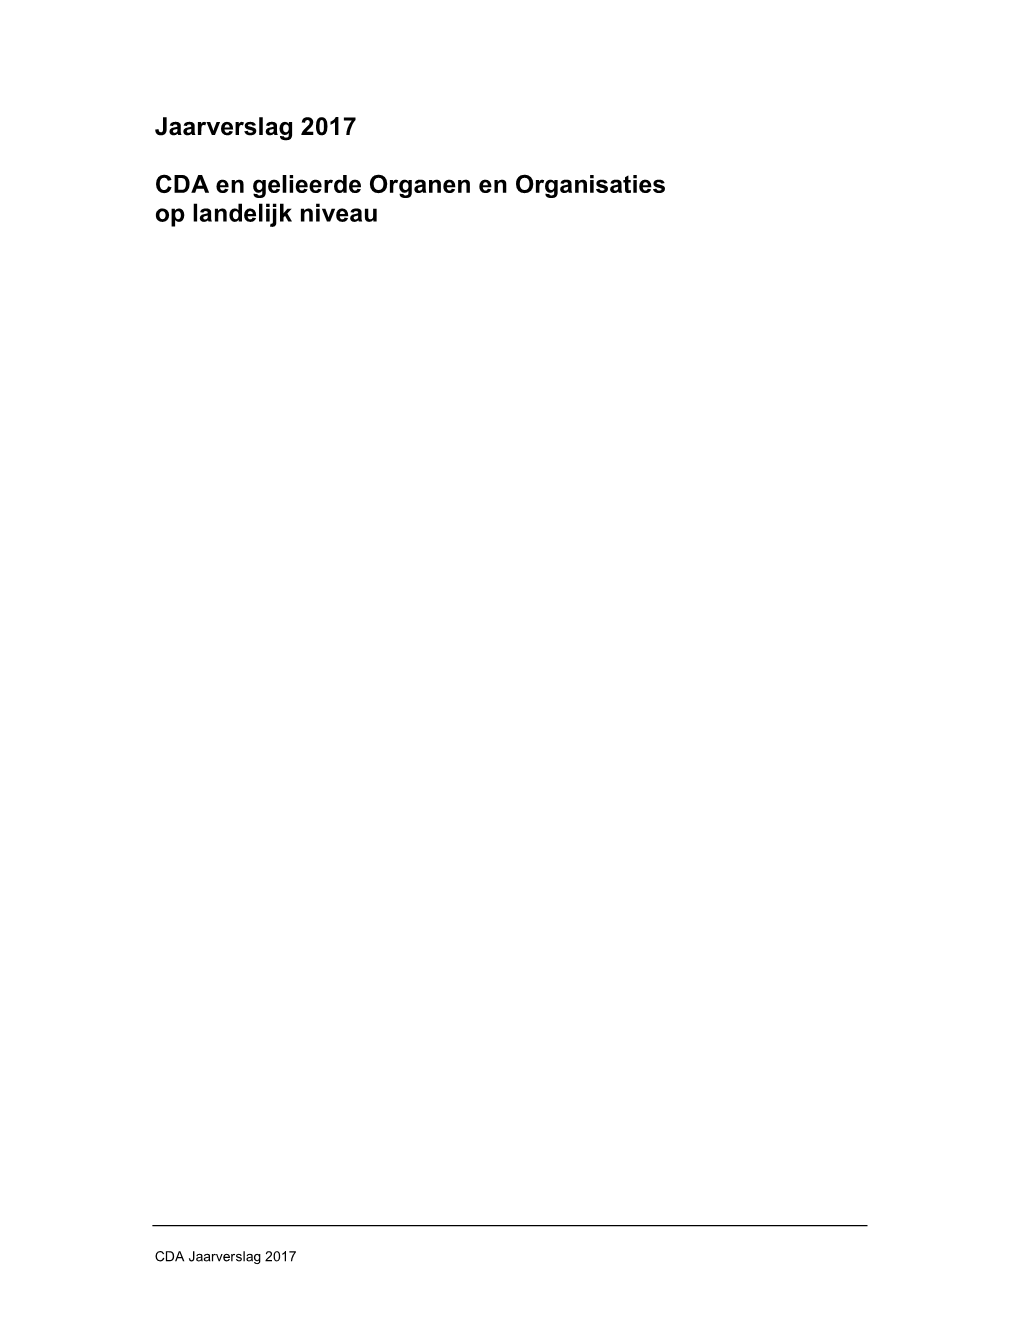 Jaarverslag 2017 CDA En Gelieerde Organen En Organisaties Op